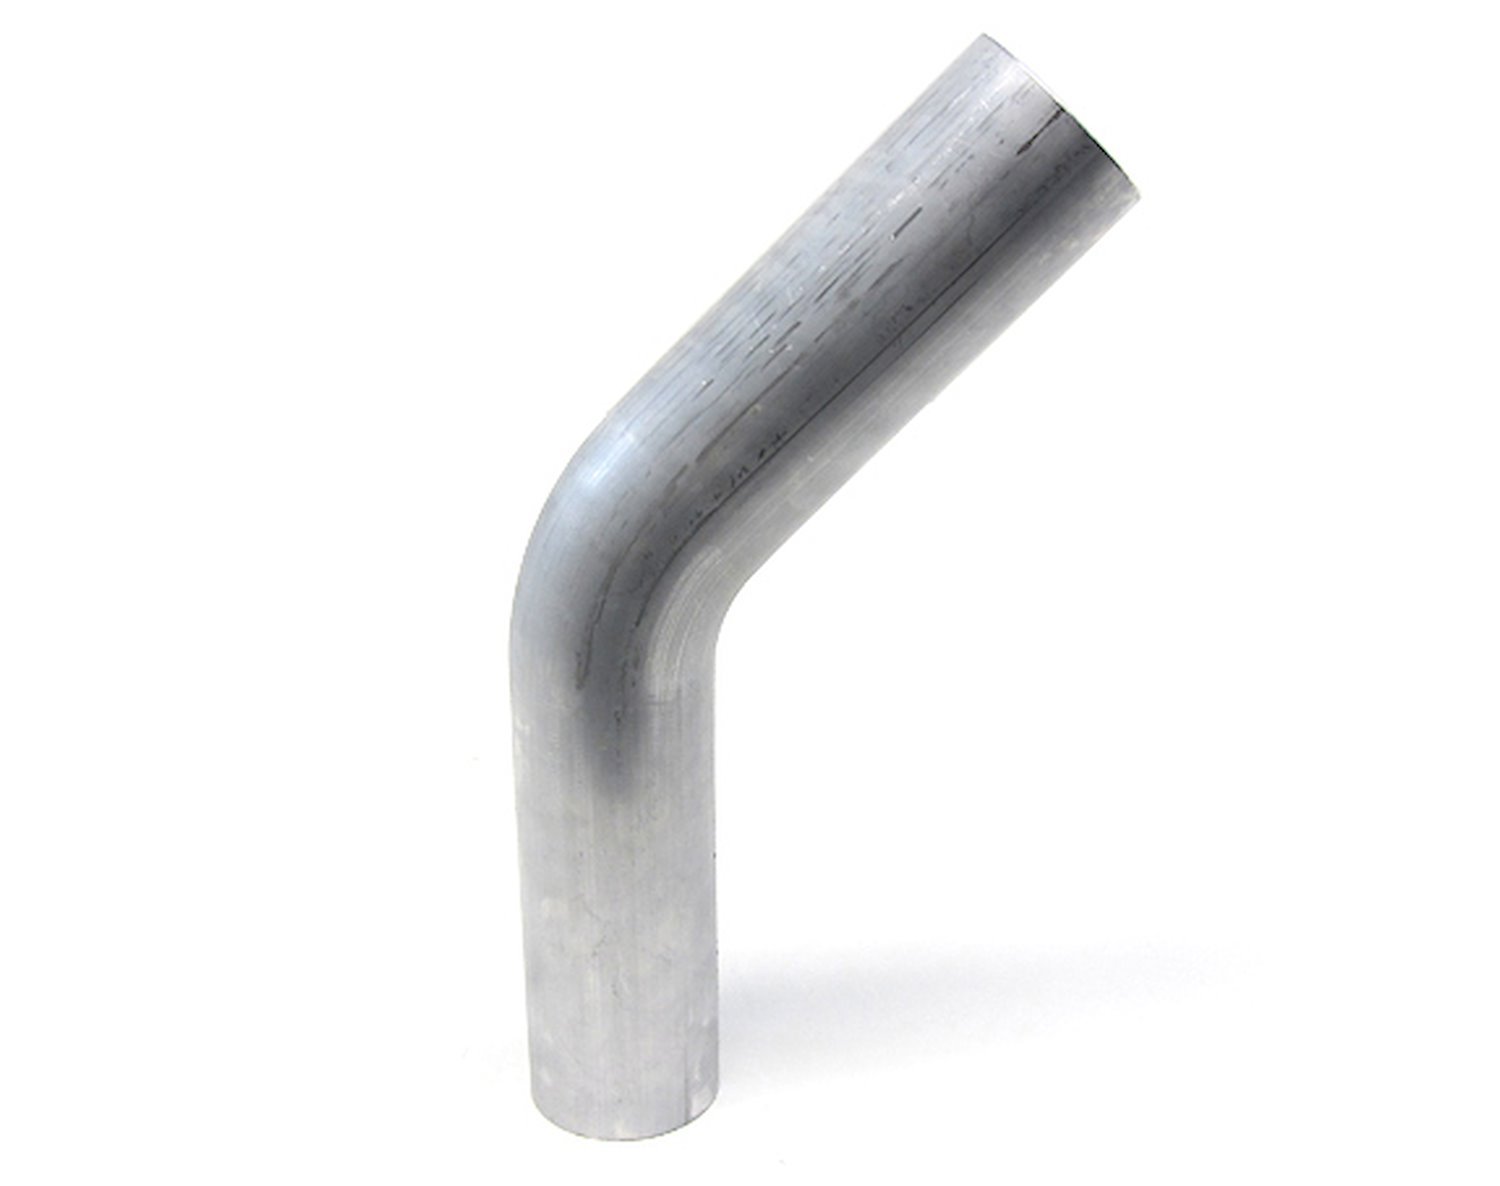 AT45-450-CLR-6 Aluminum Elbow Tube, 6061 Aluminum, 45-Degree Bend Elbow Tubing, 4-1/2 in. OD, Tight Radius, 6 in. CLR